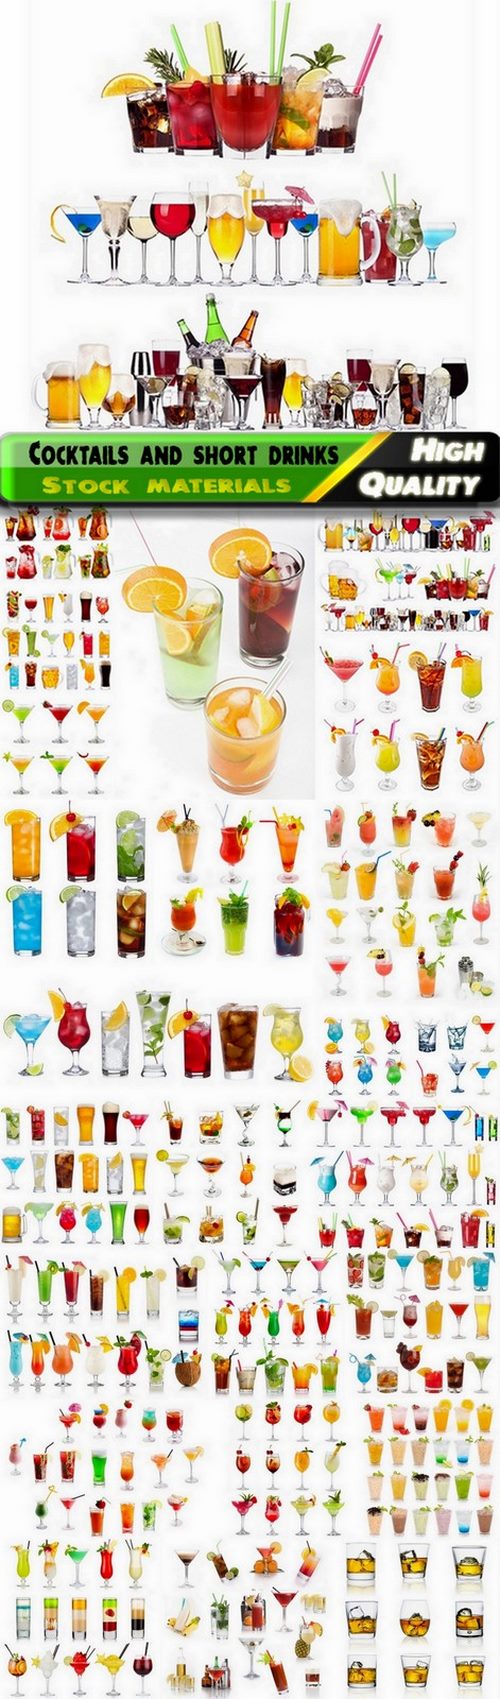 Big set of cocktails and short drinks - 25 HQ Jpg